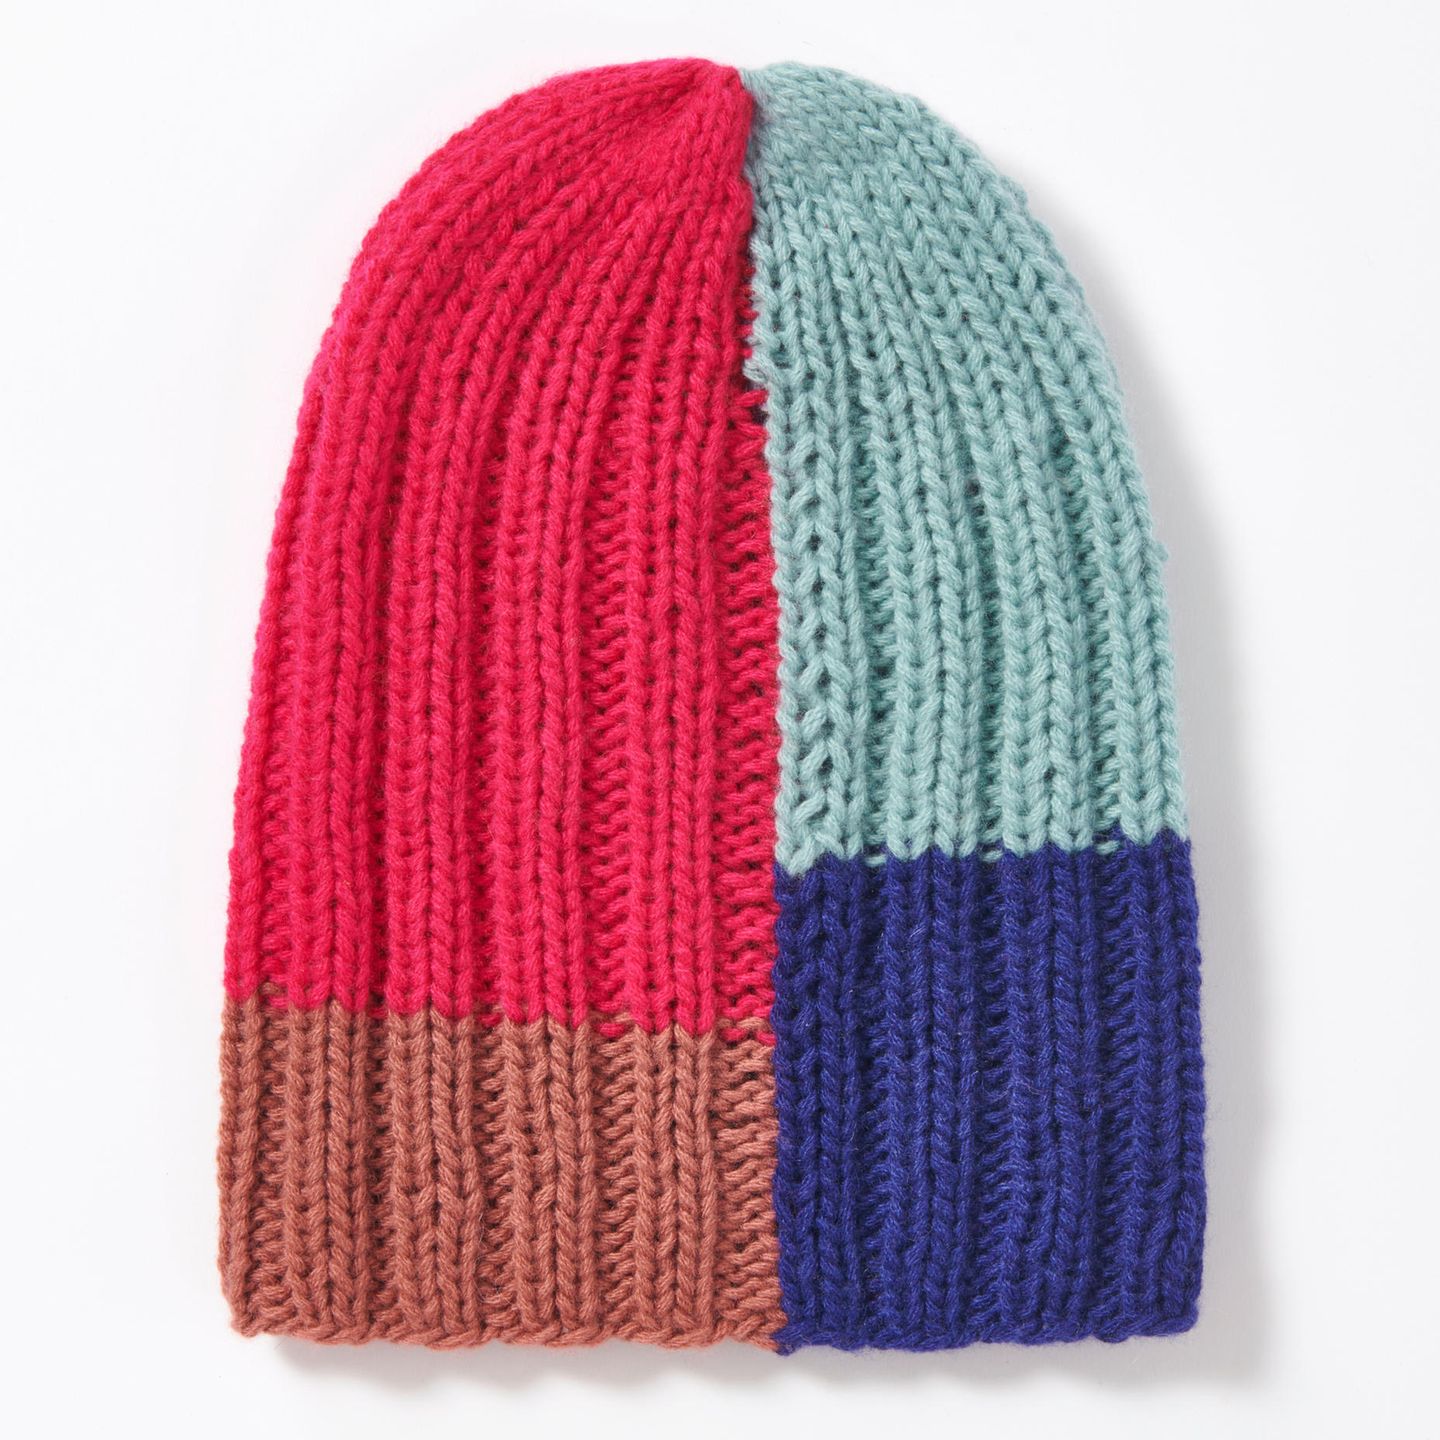 Color-Block-Mütze stricken: dreifarbige Mütze